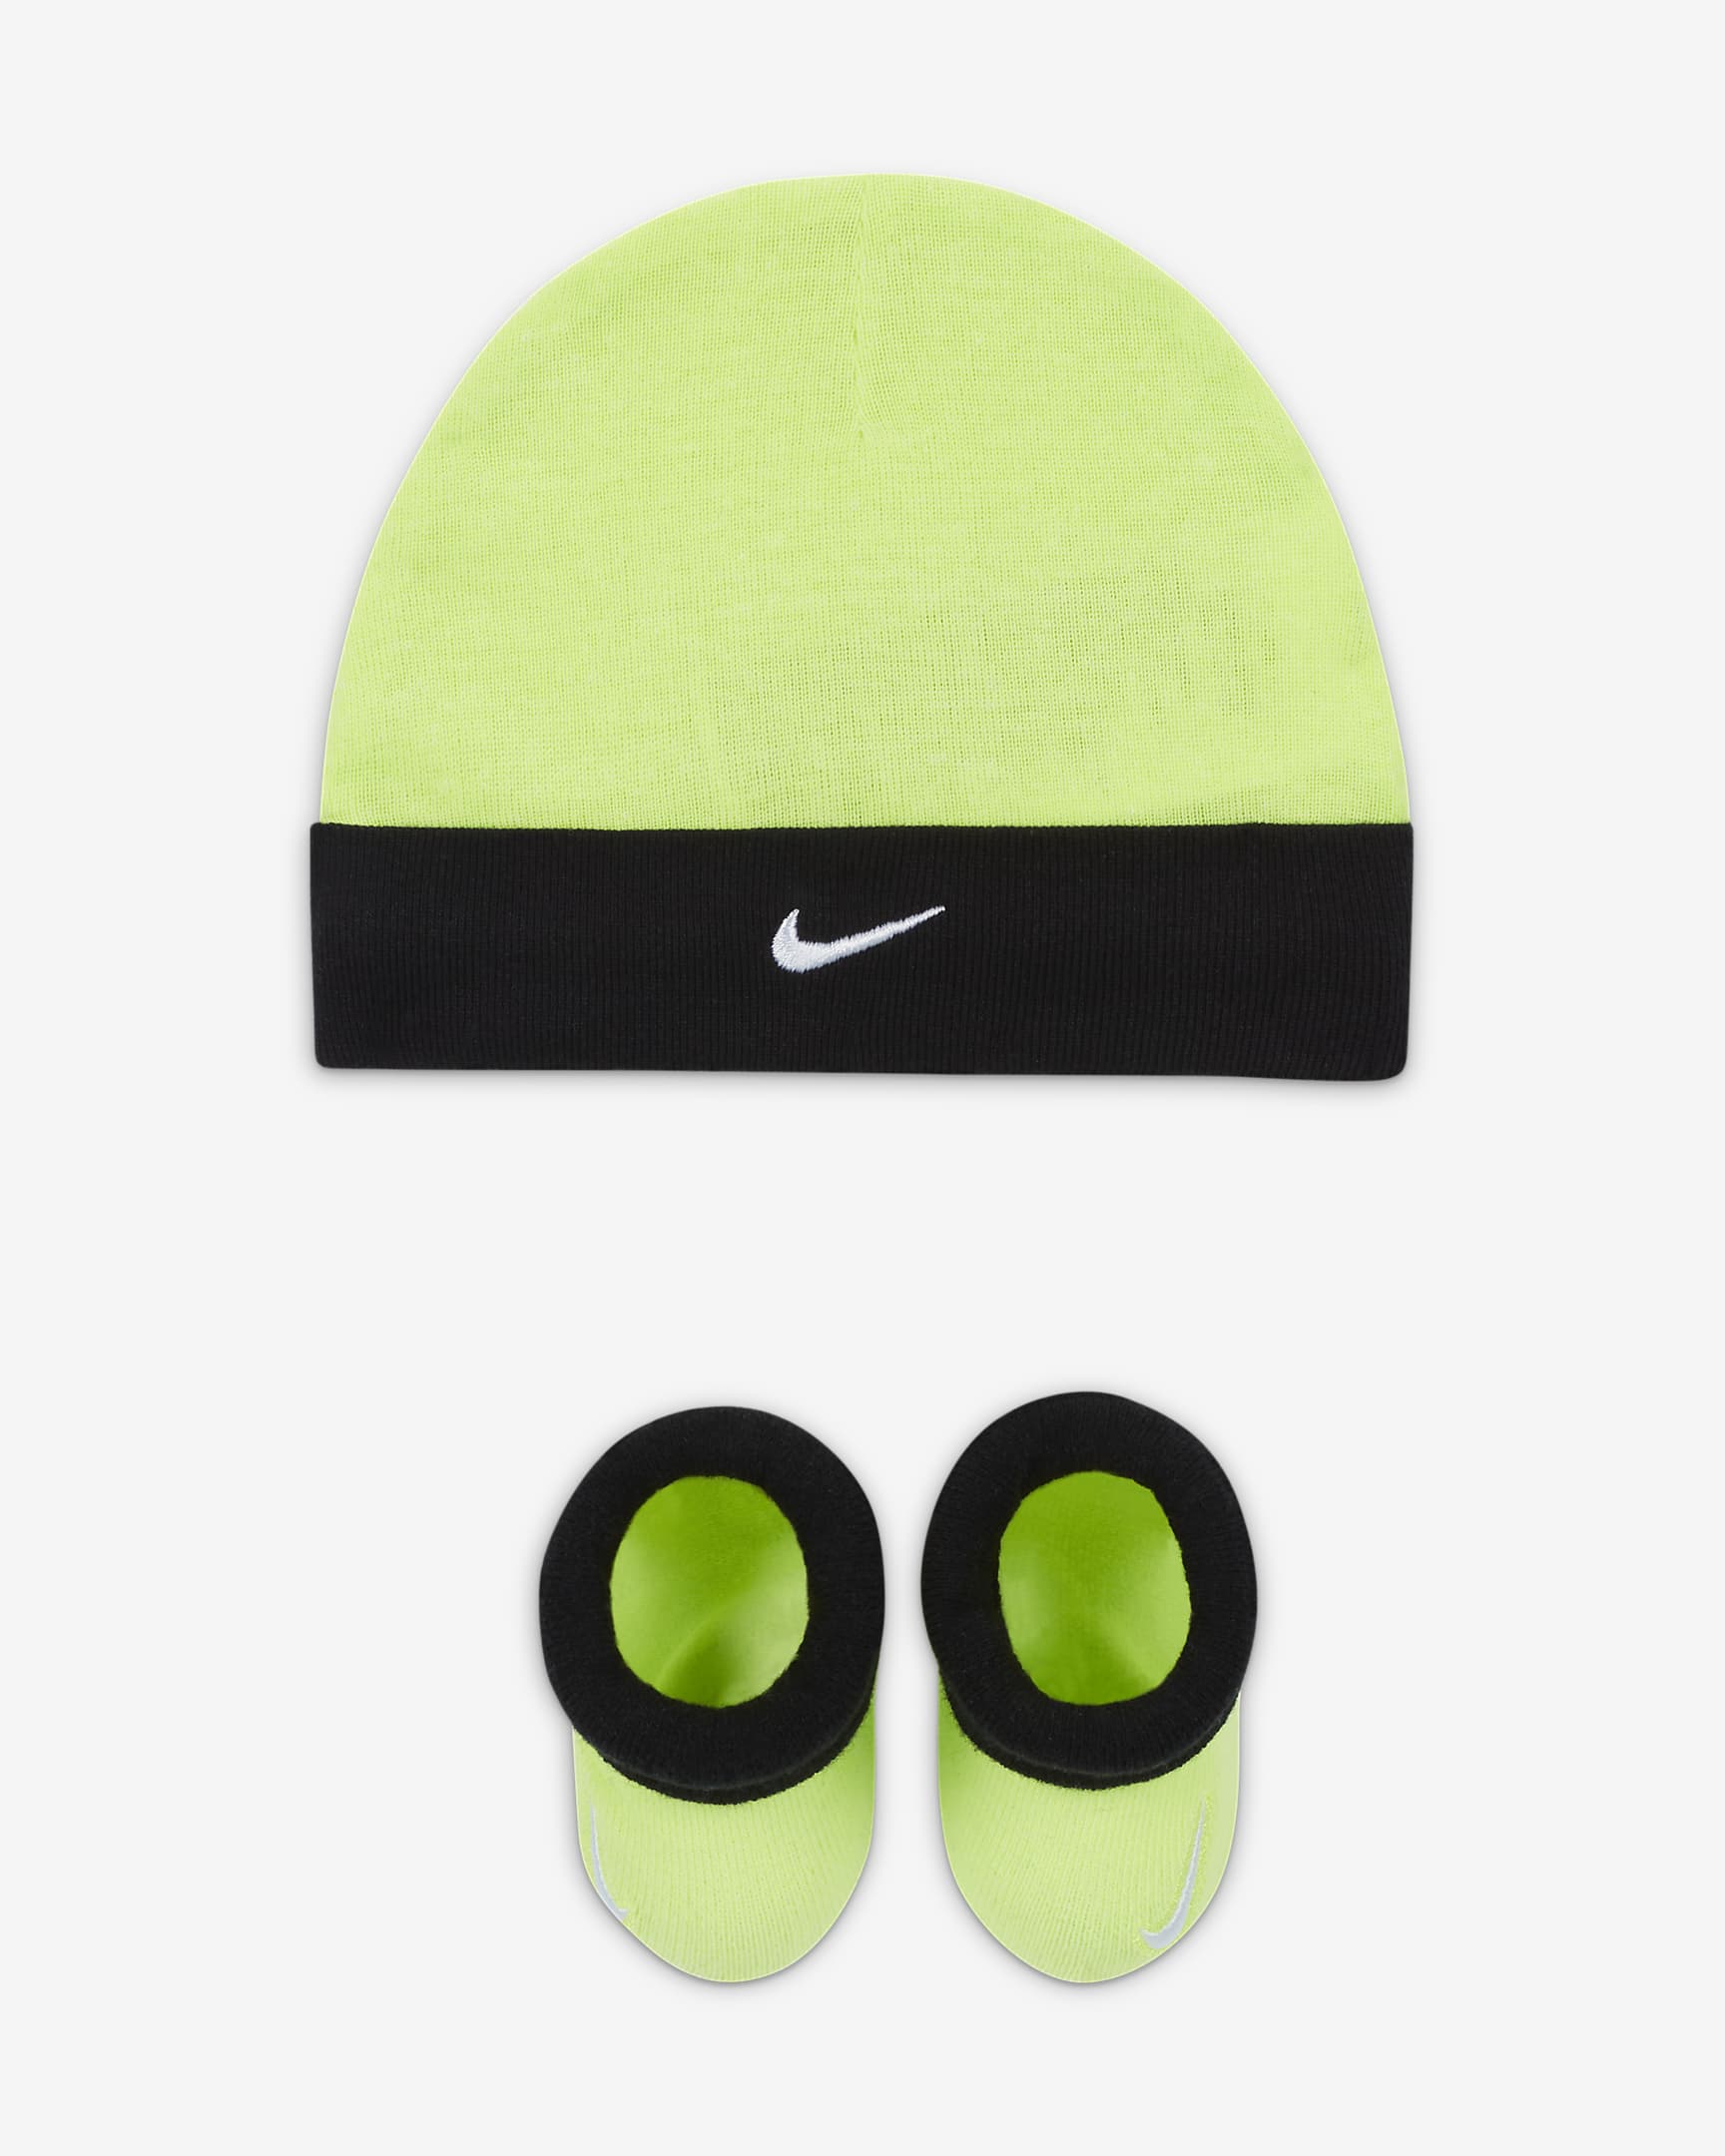 Nike Baby Hat & Booties Set  $5.79  at Nike